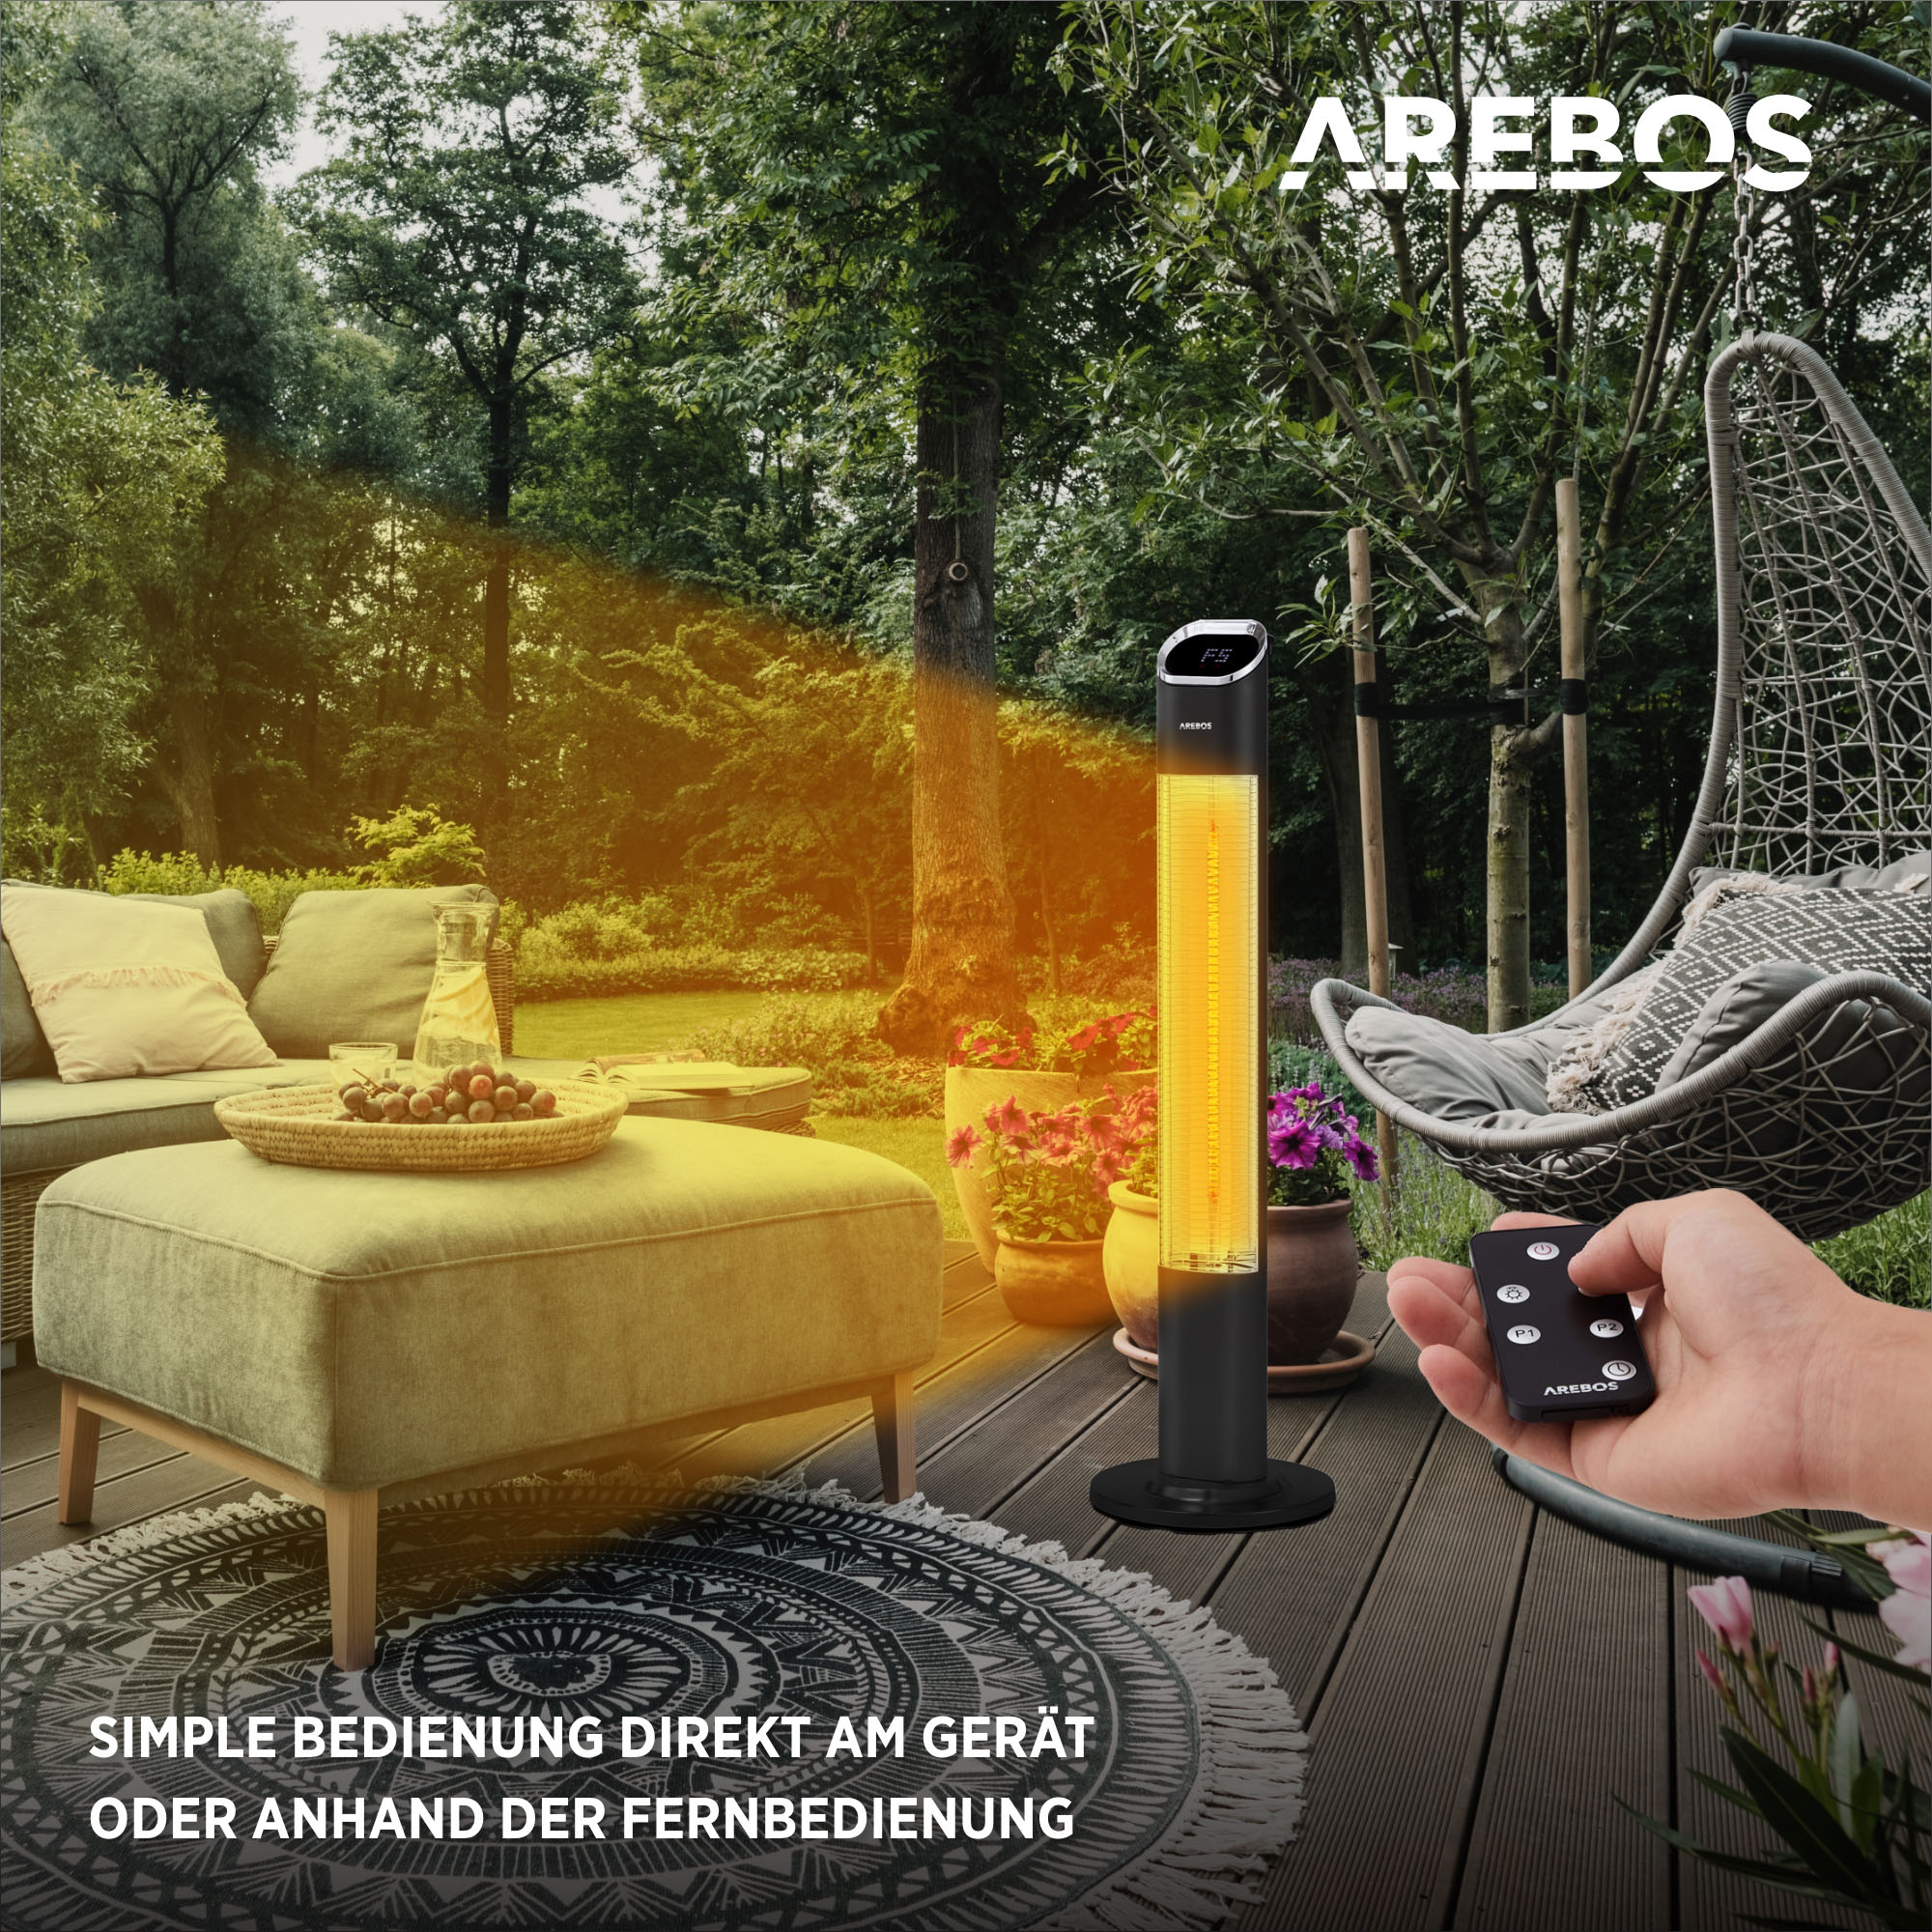 Std. | Premium, AREBOS schwarz Fernbedienung | 2 Terrassen-Heizstrahler mit Heizstufen Timer| 24